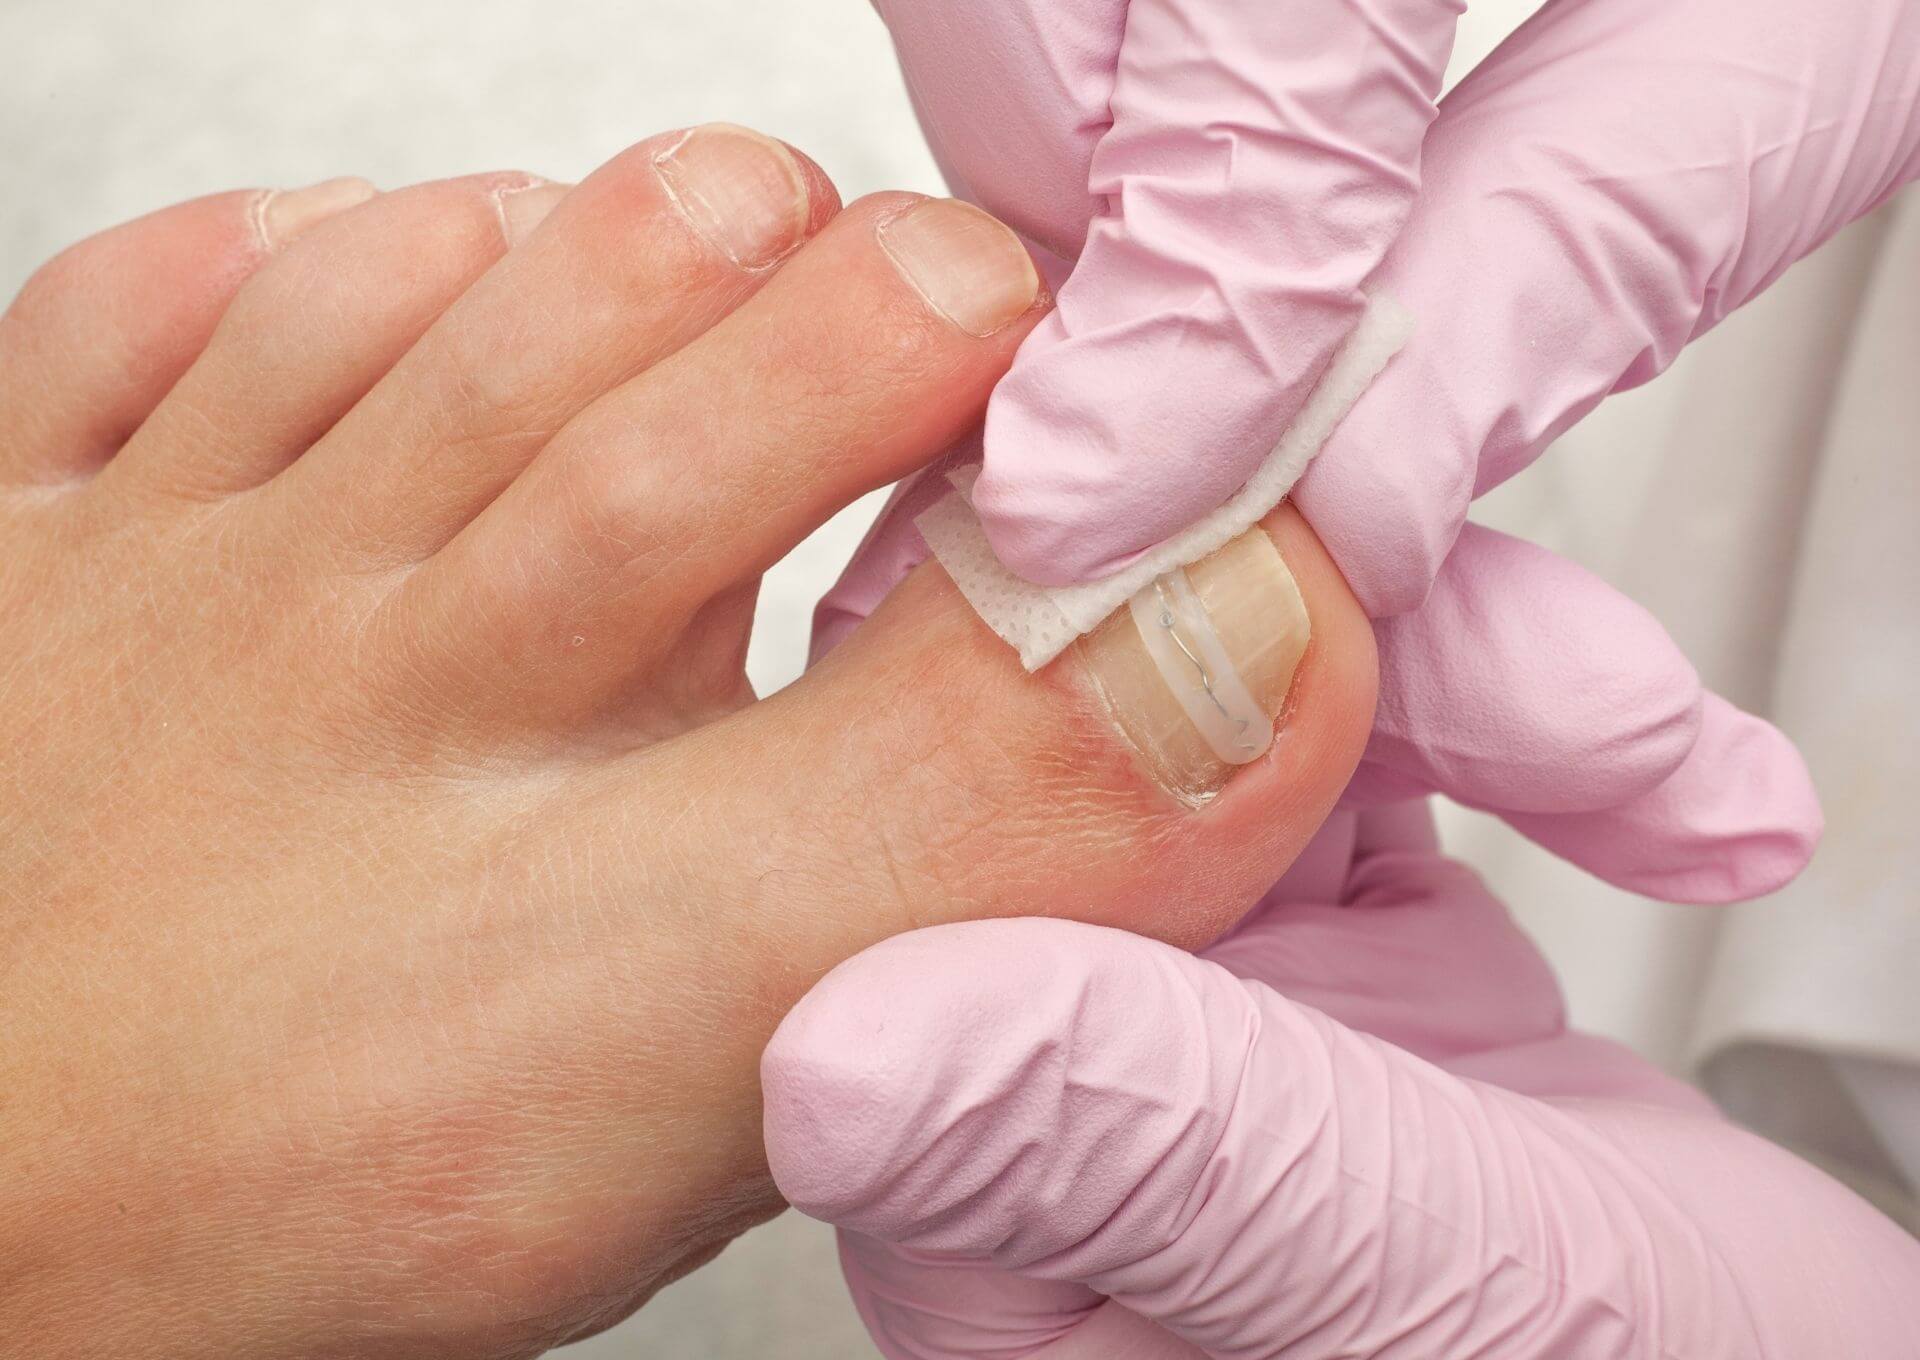 Zabieg terapii paznokci pogrubionych